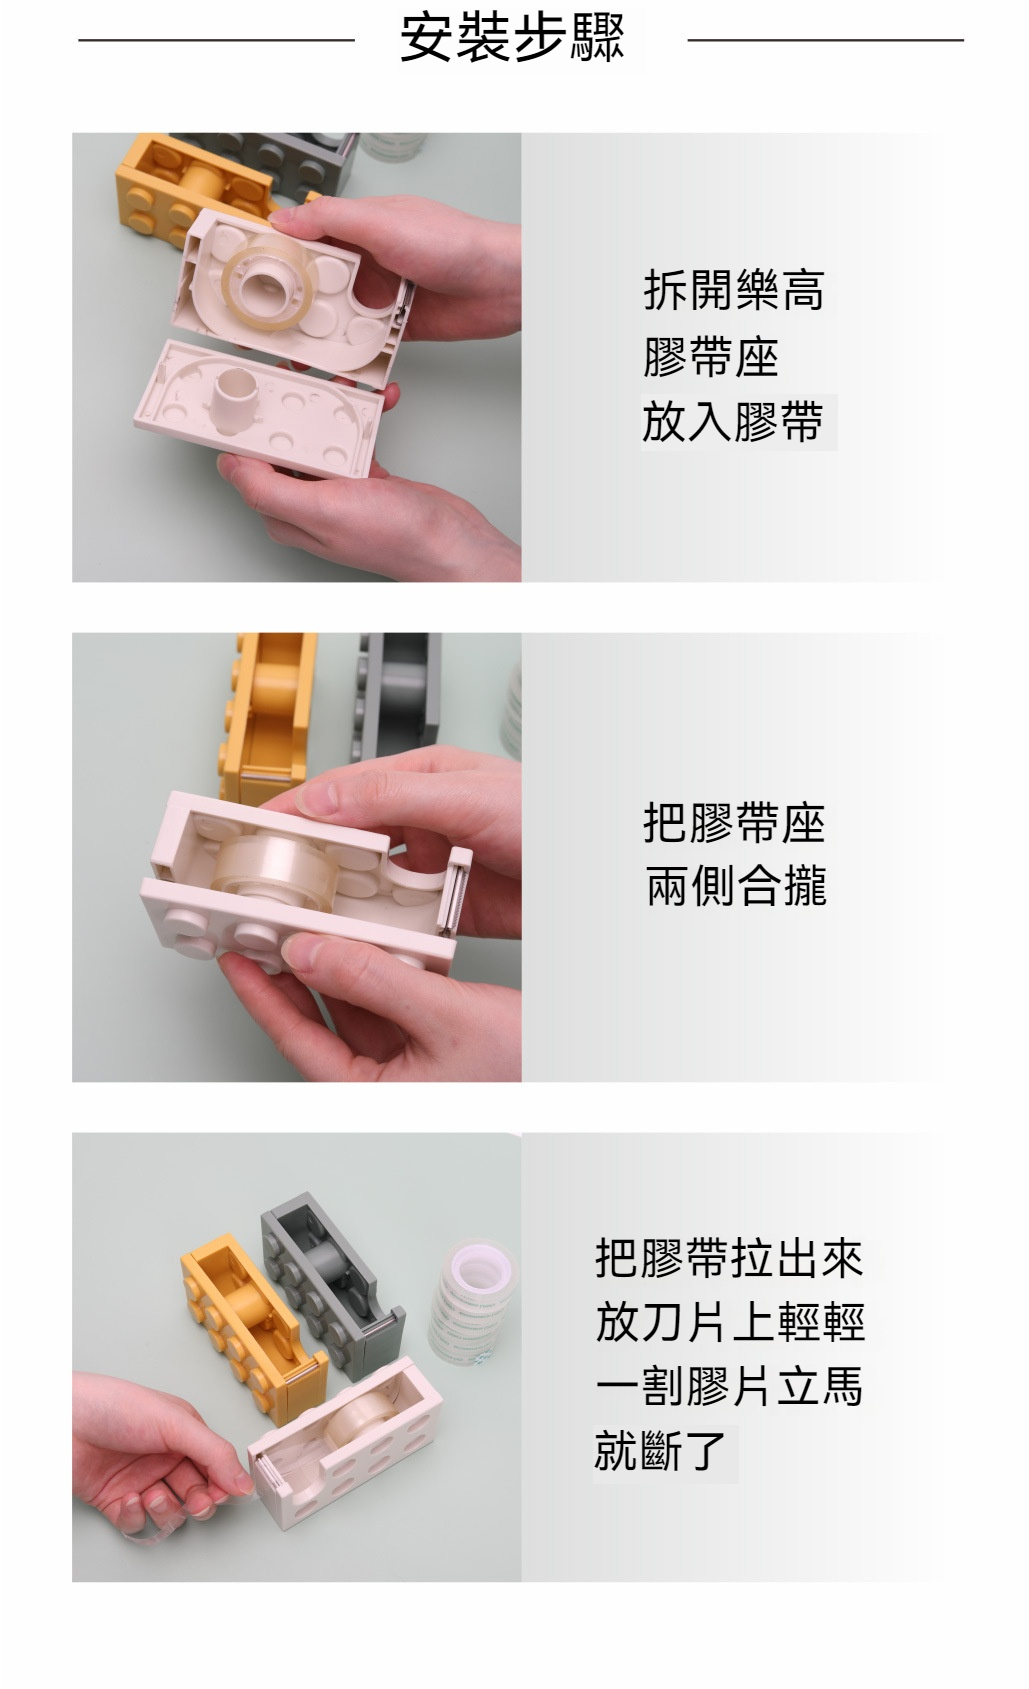 積木造型膠帶台 創意透明膠帶切割器 創意造型紙膠帶切割器